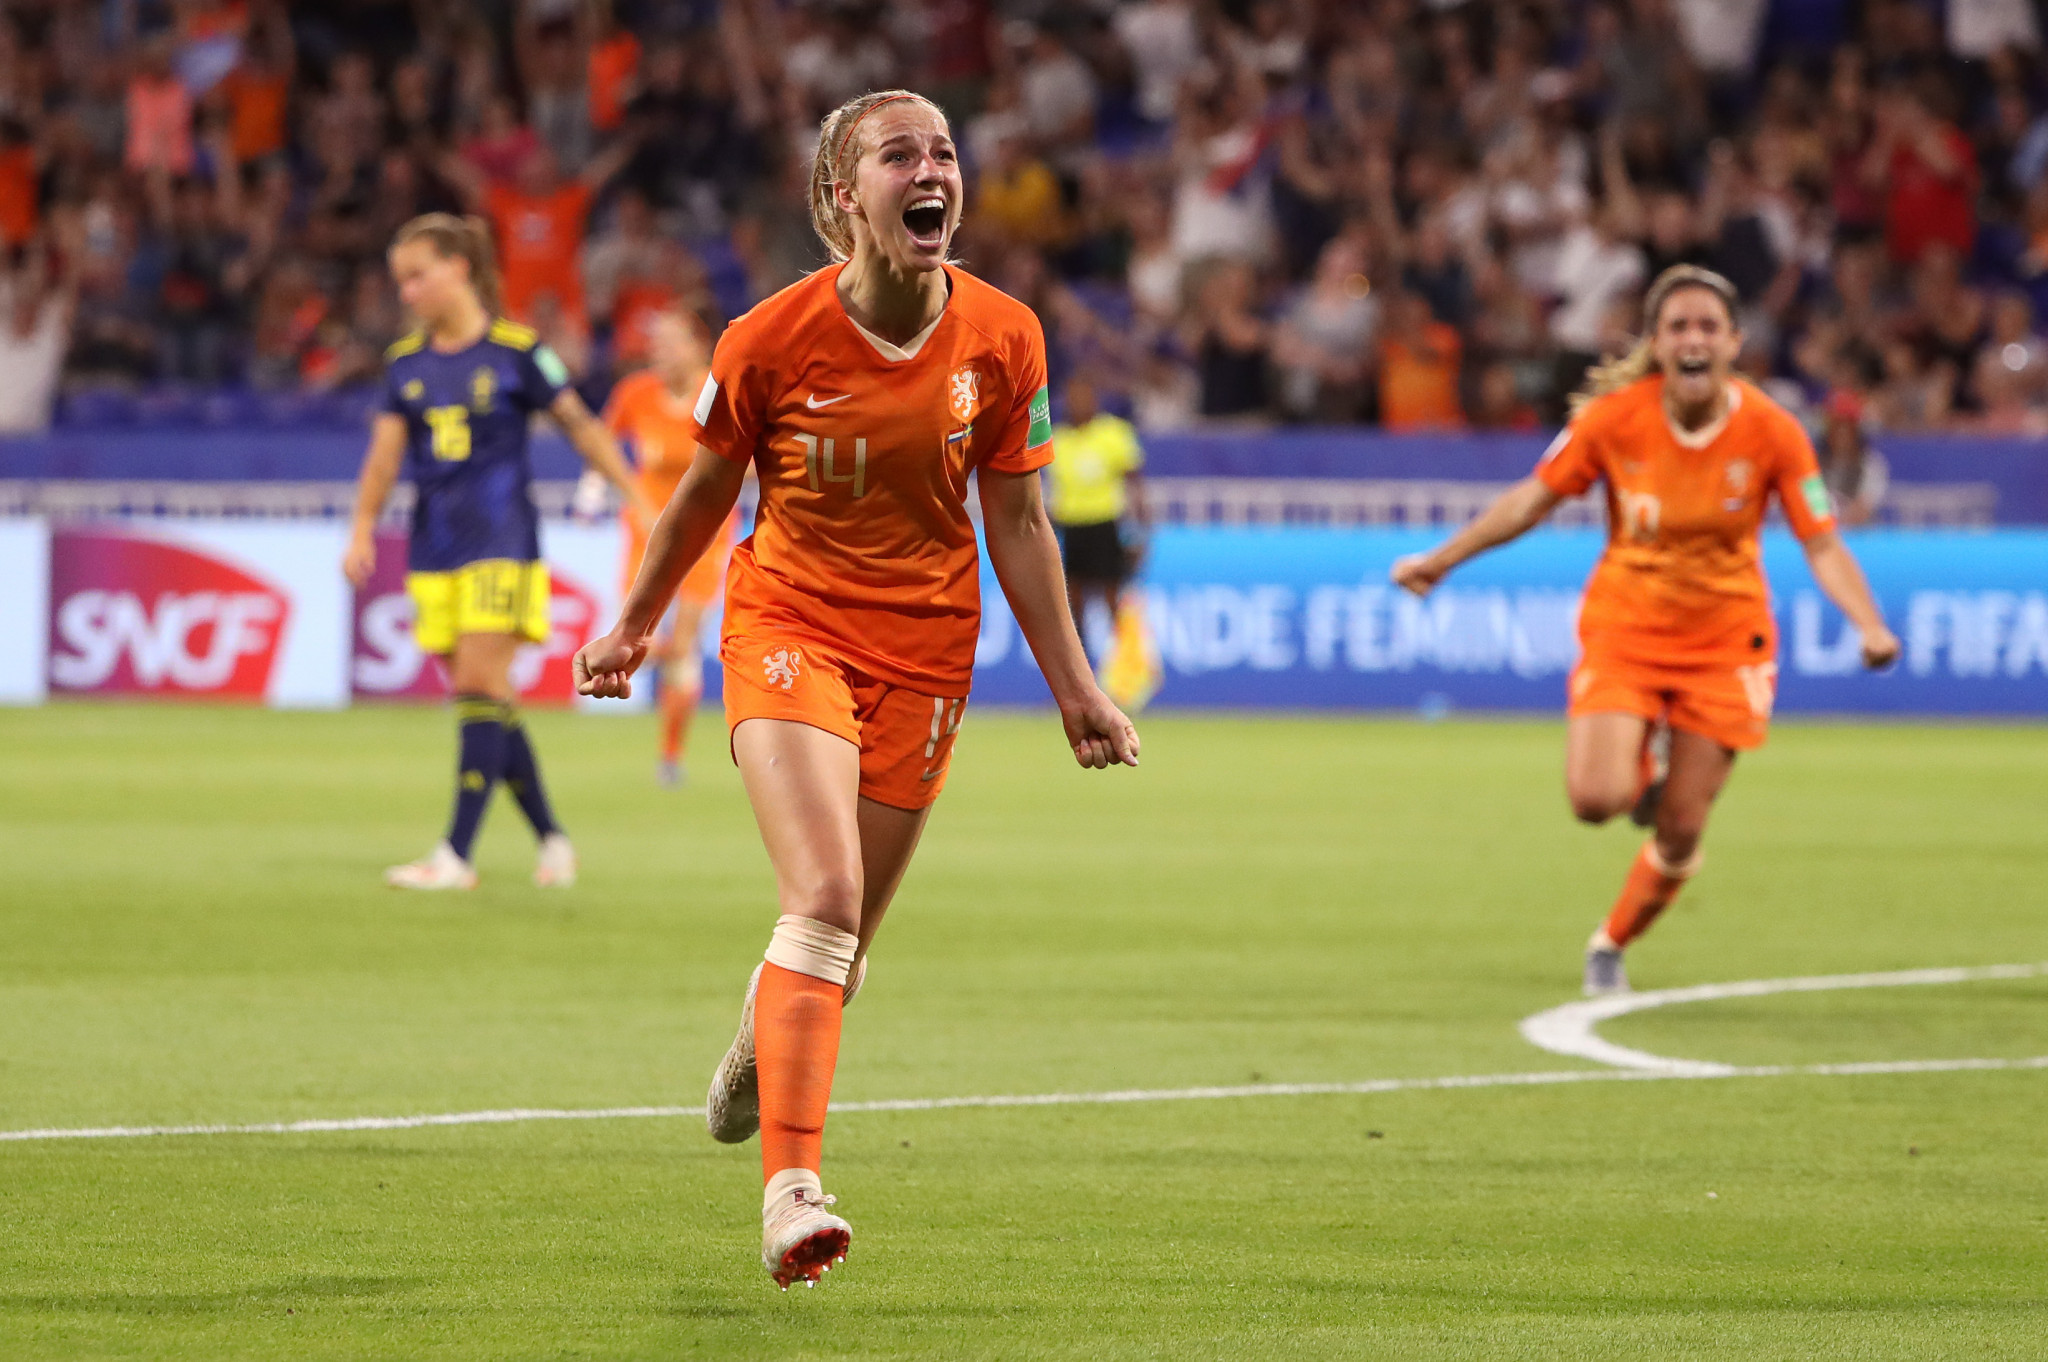 Groenen fires Netherlands into FIFA Women's World Cup final 